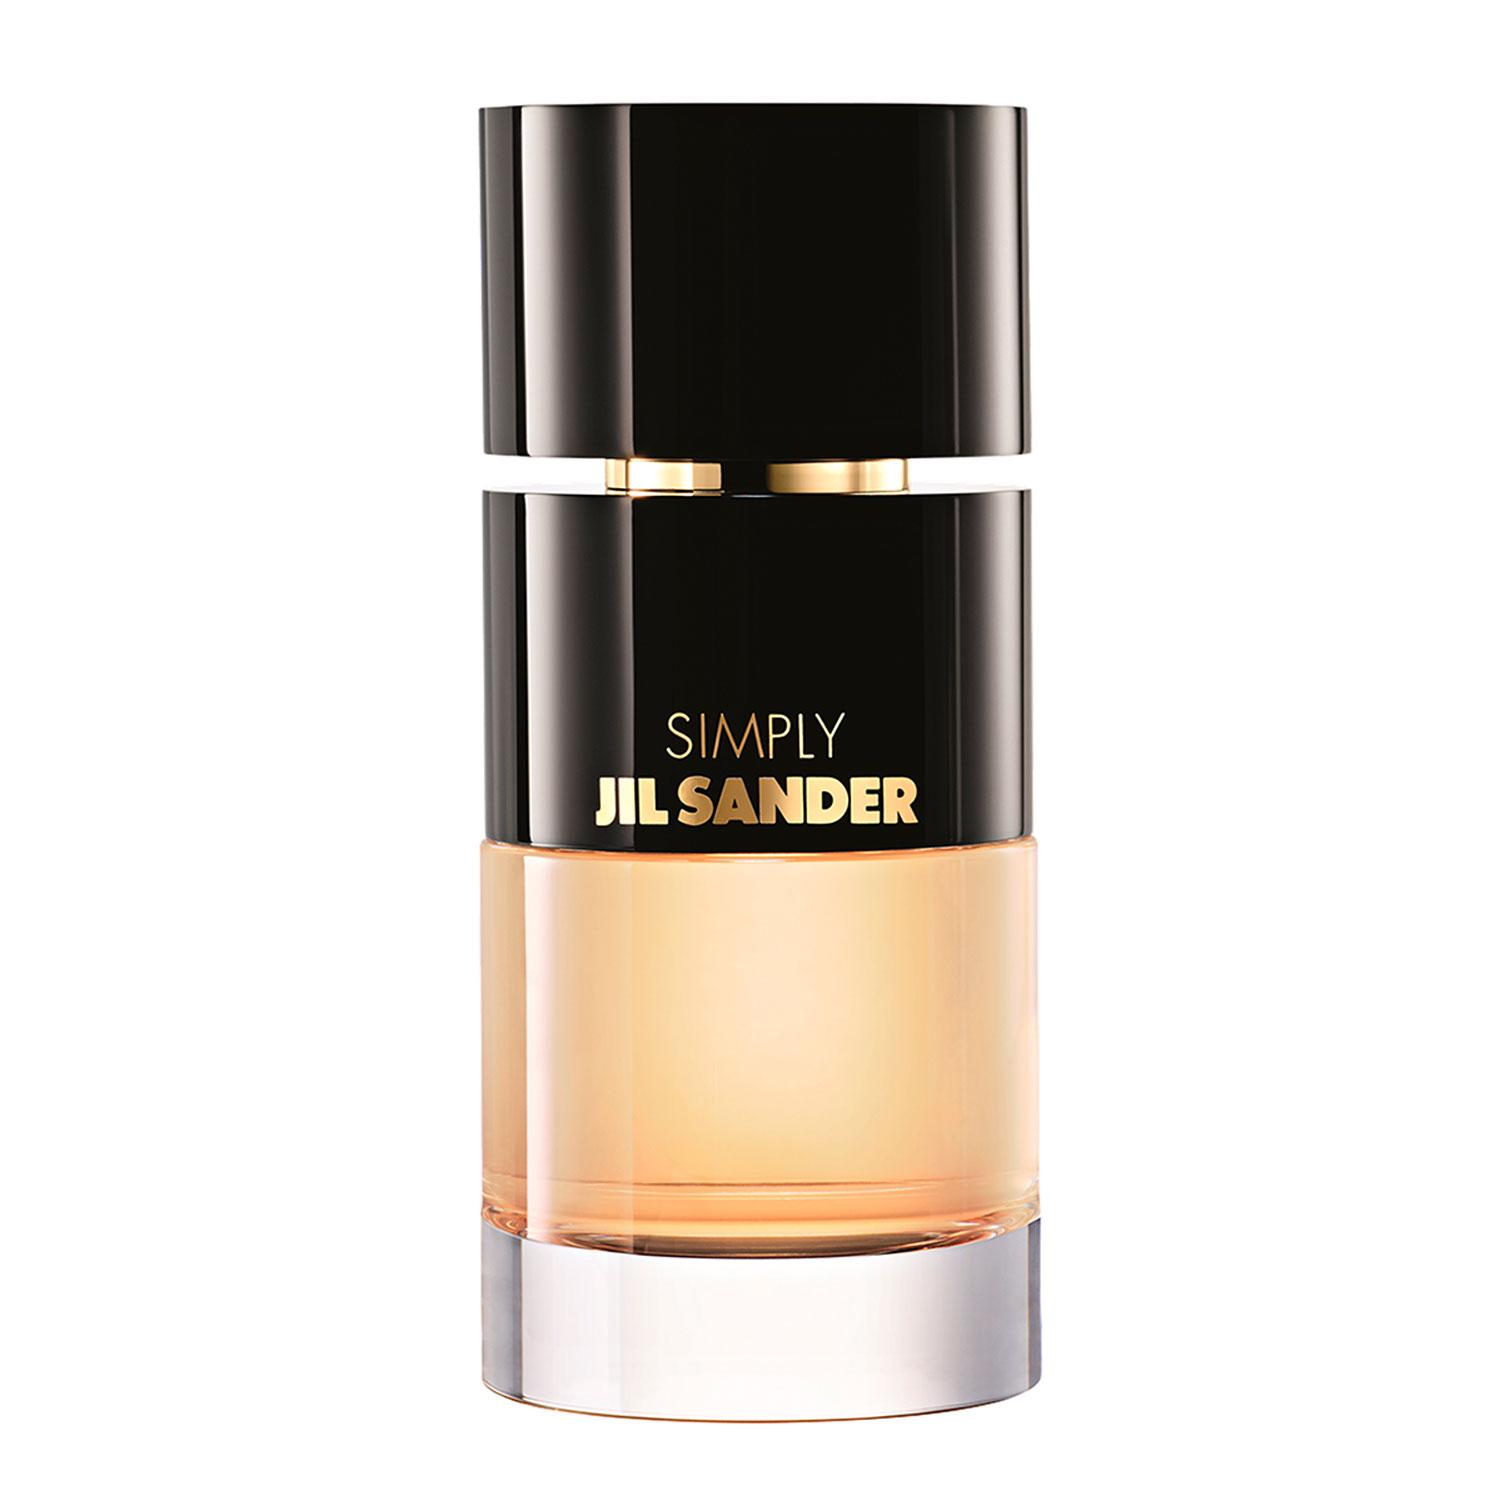 Simply Jil Sander - Eau de Parfum